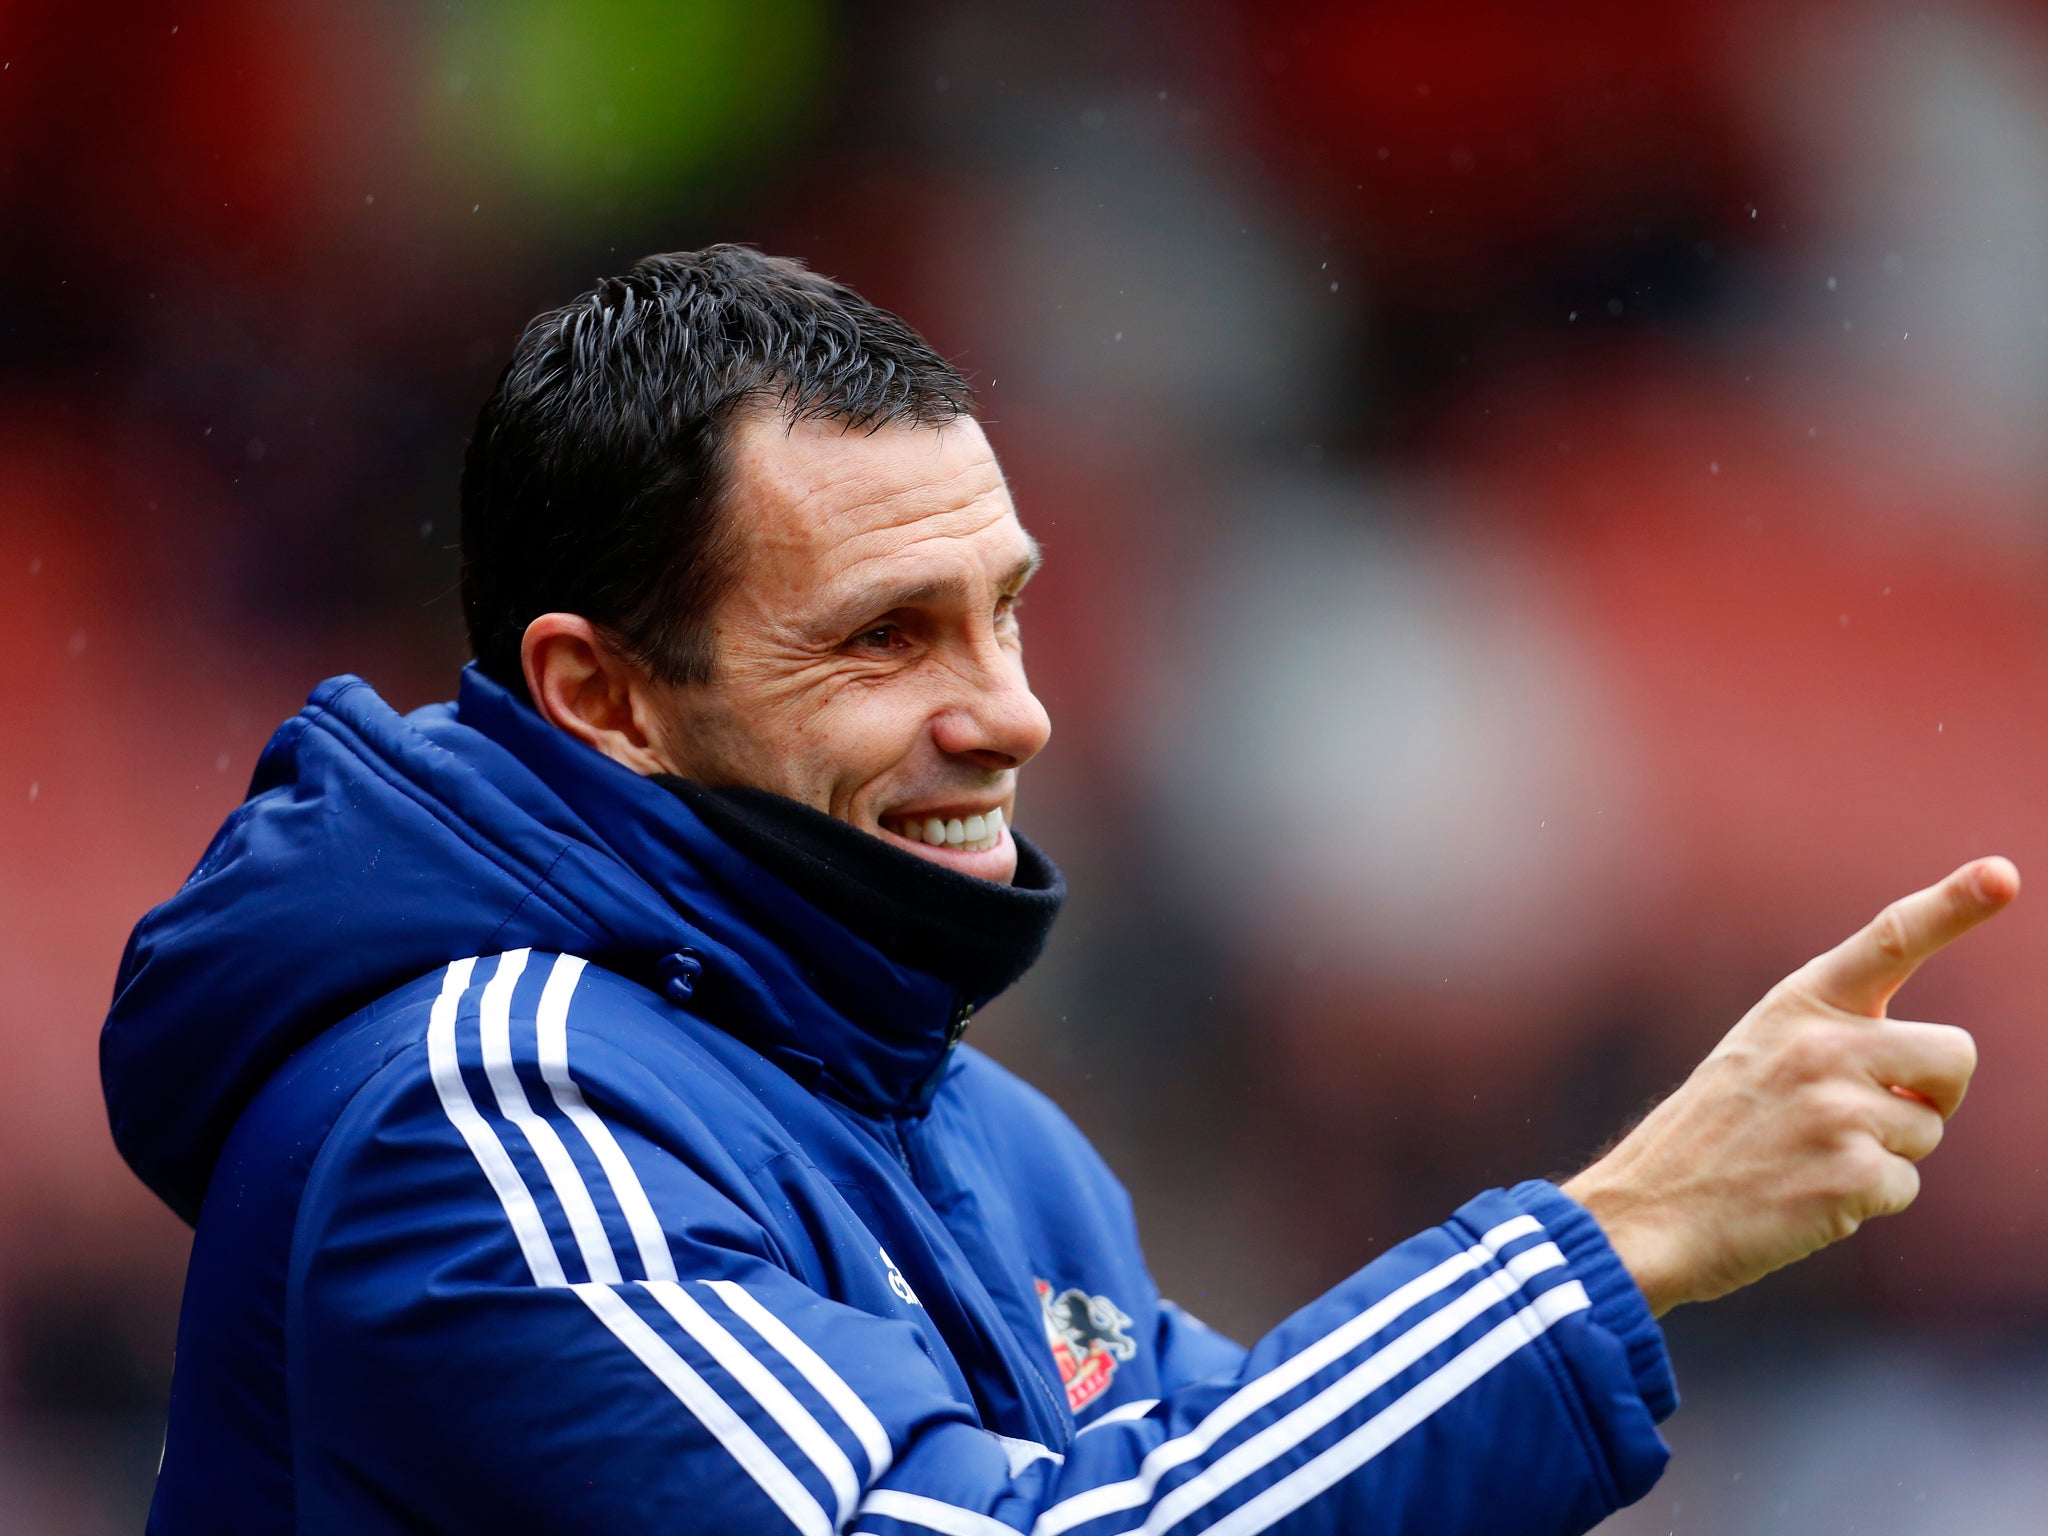 Sunderland manager Gus Poyet looks pleased enough with Gardener's opener